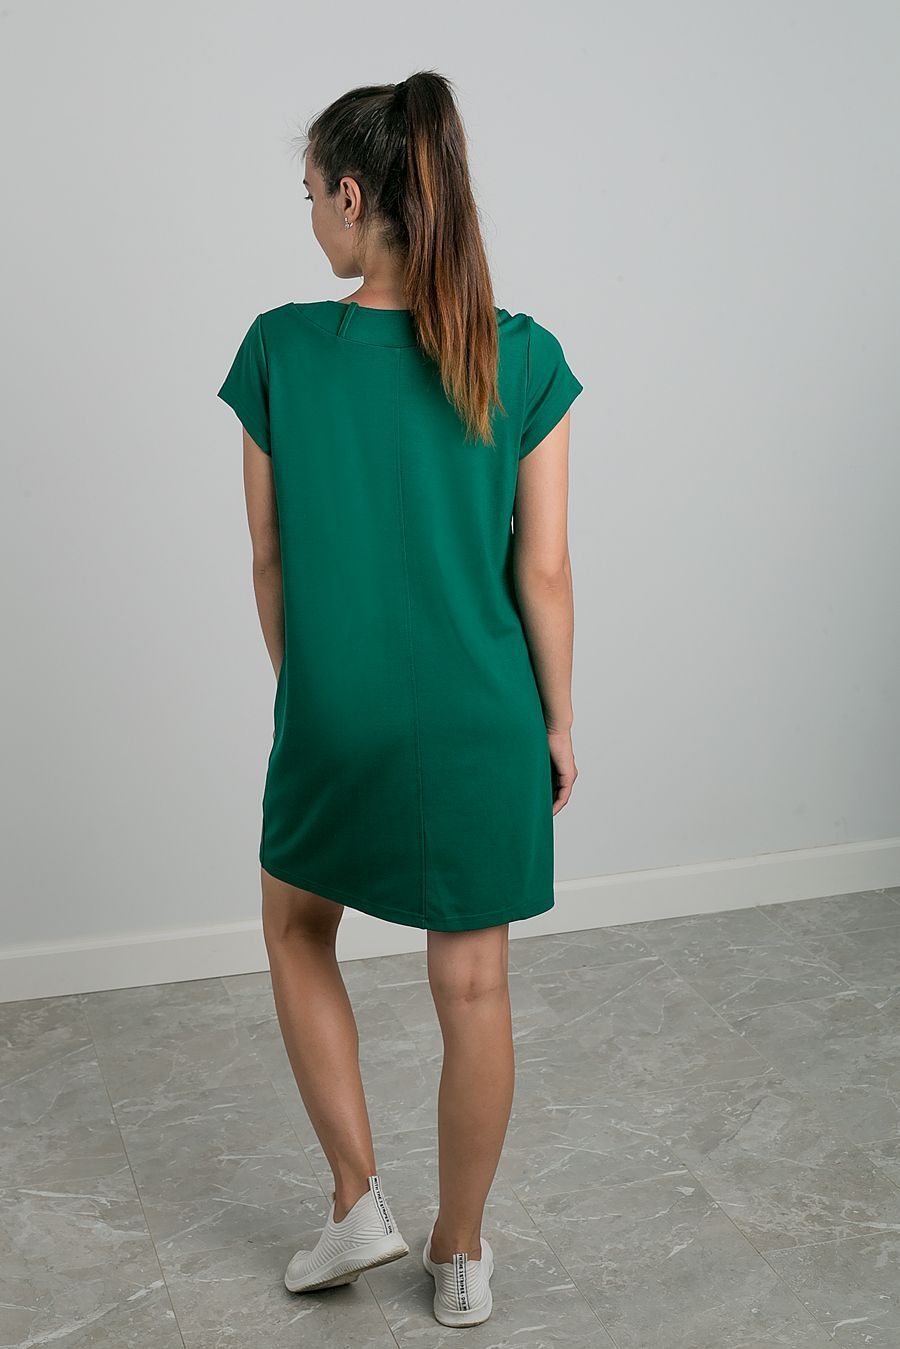 платье Л 534 т. зеленый